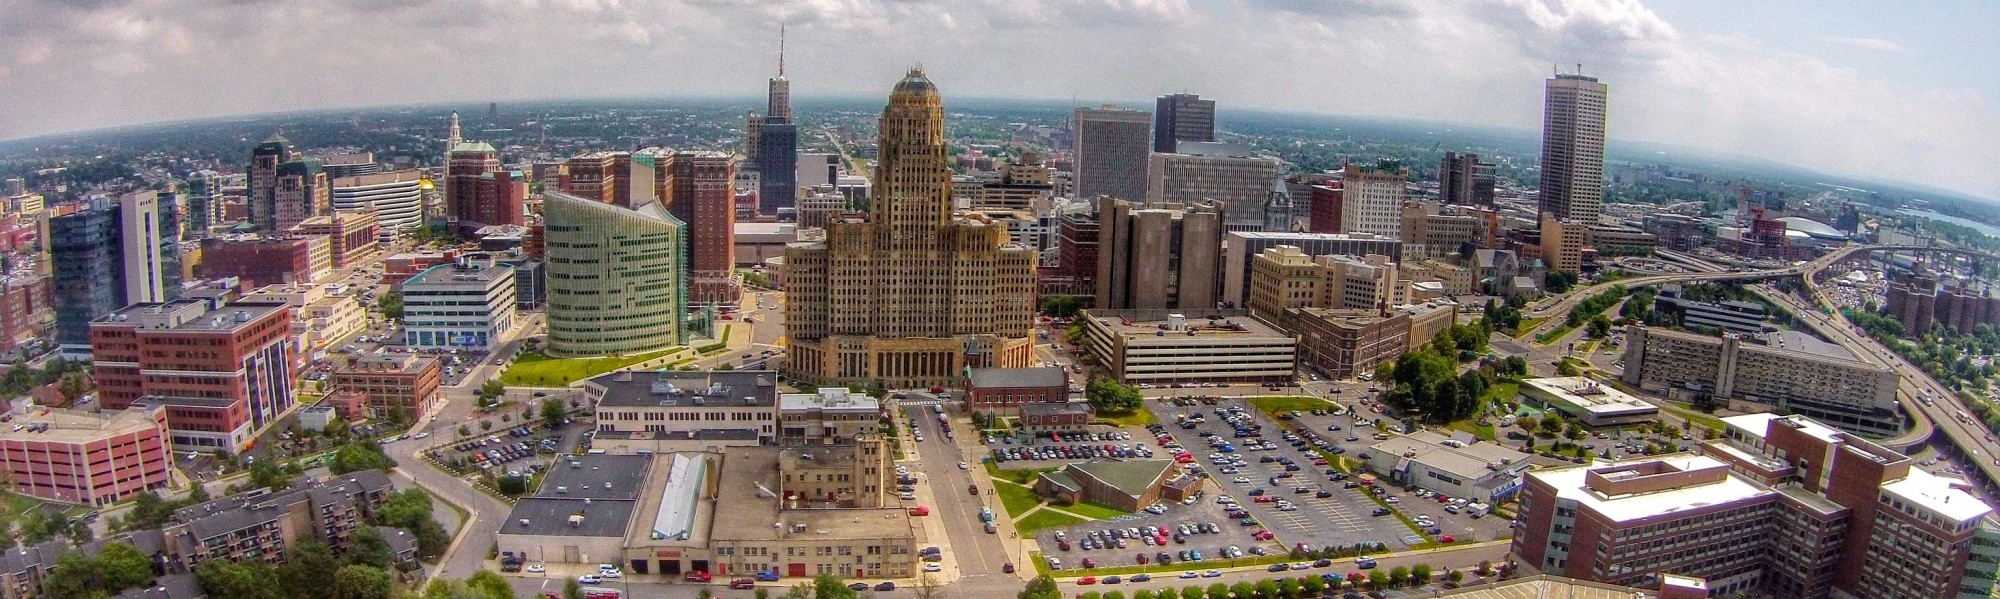 Buffalo skyline 2014